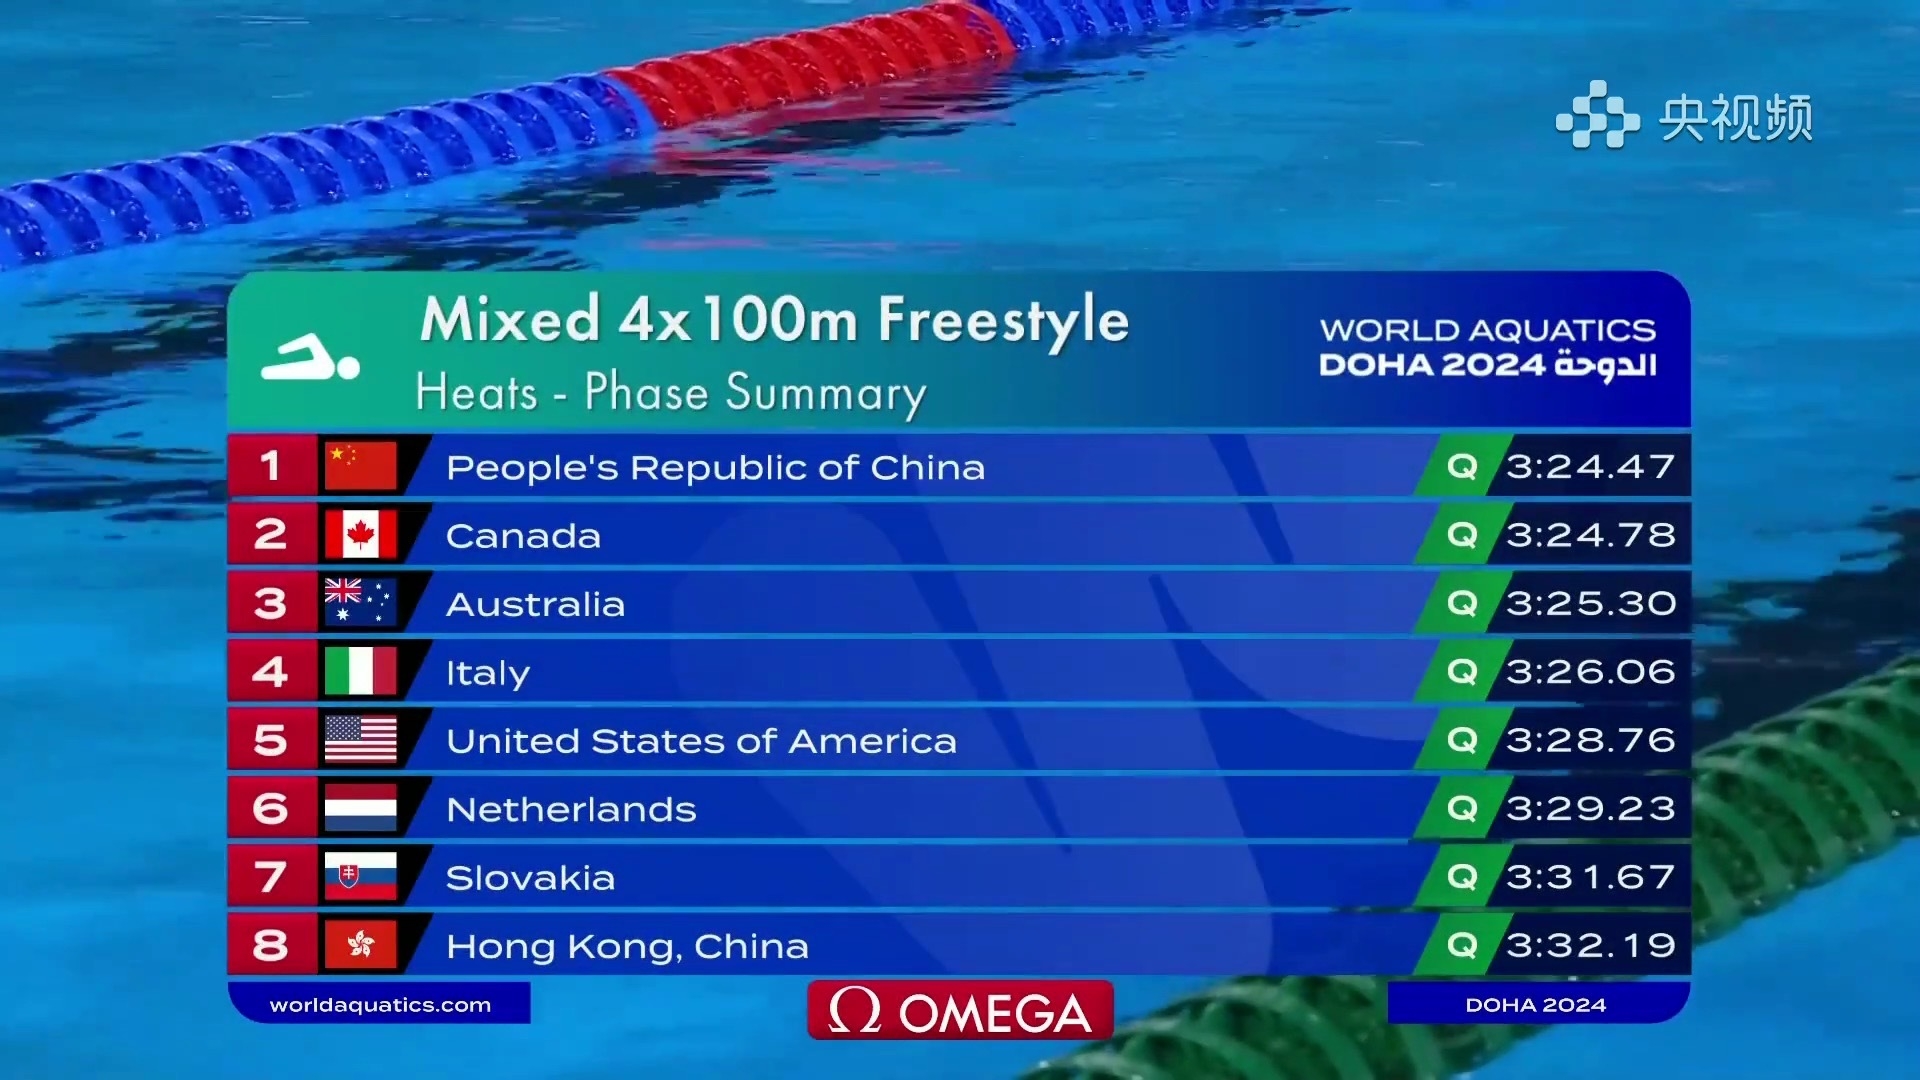 破亚洲纪录！中国第一！世锦赛4x100自由泳混合接力预赛结束